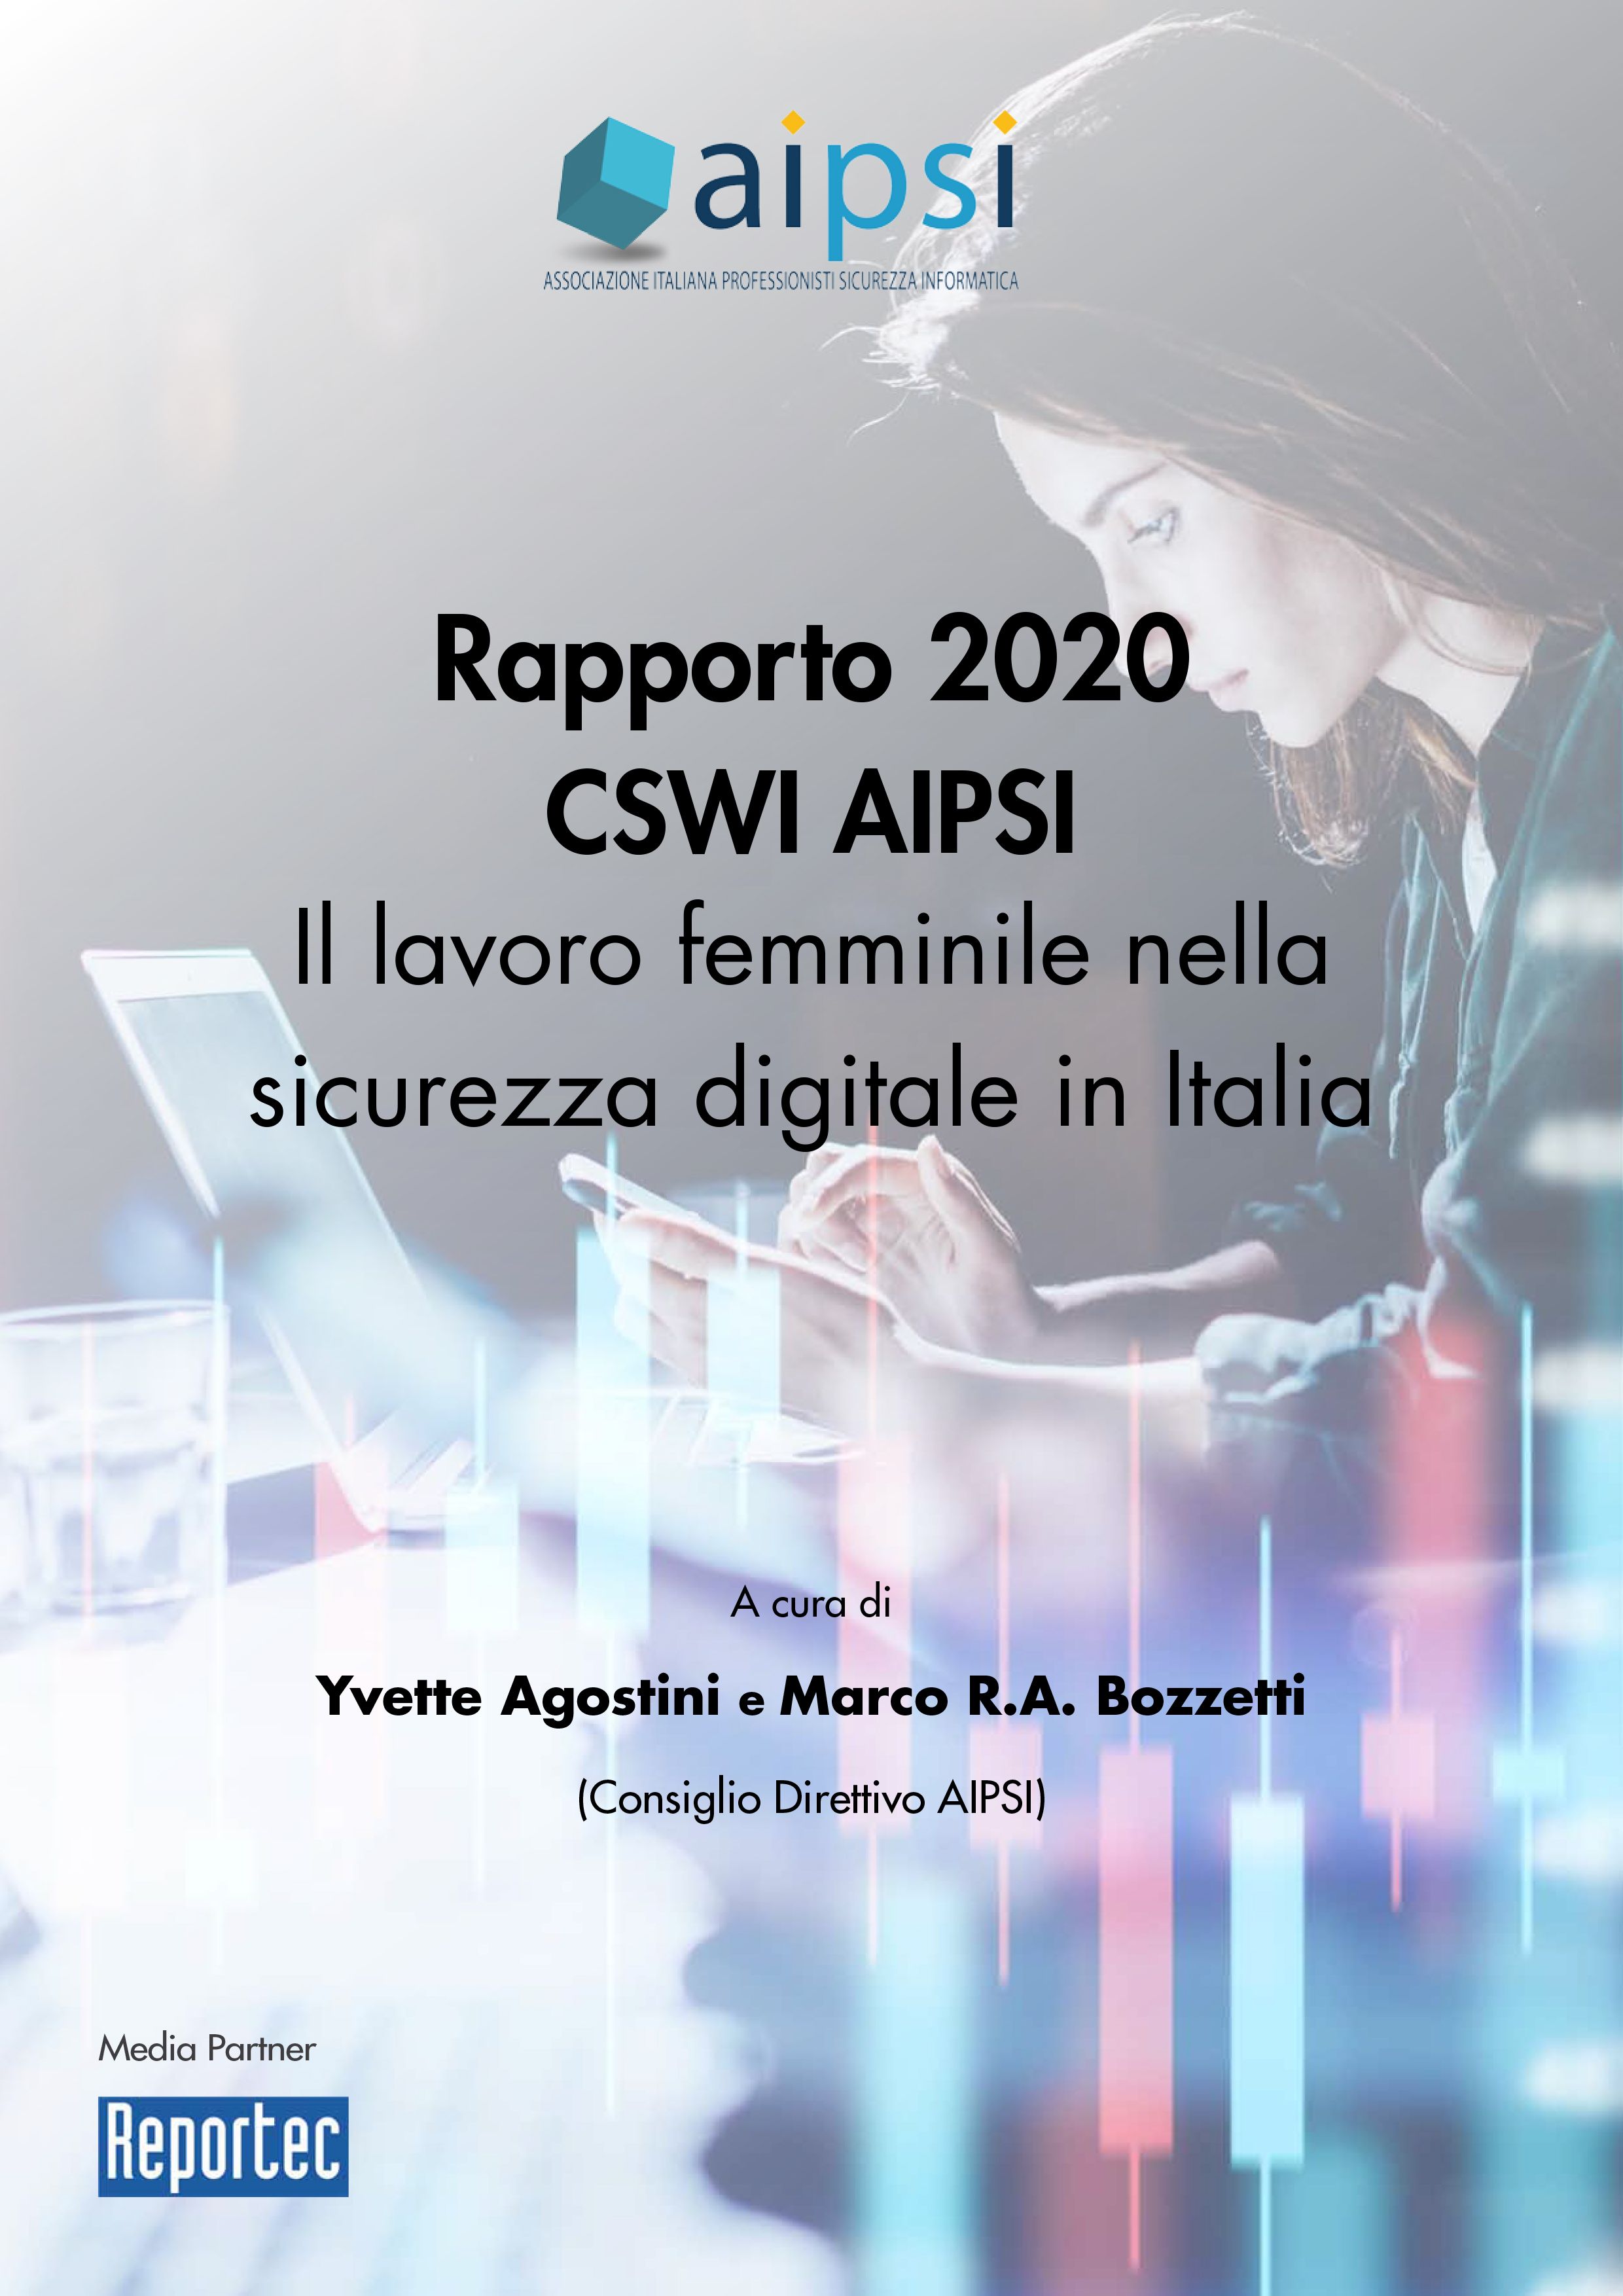 Rapporto 2020 indagine AIPSI-CSWI sul lavoro femminile nella cybersecurity in Italia